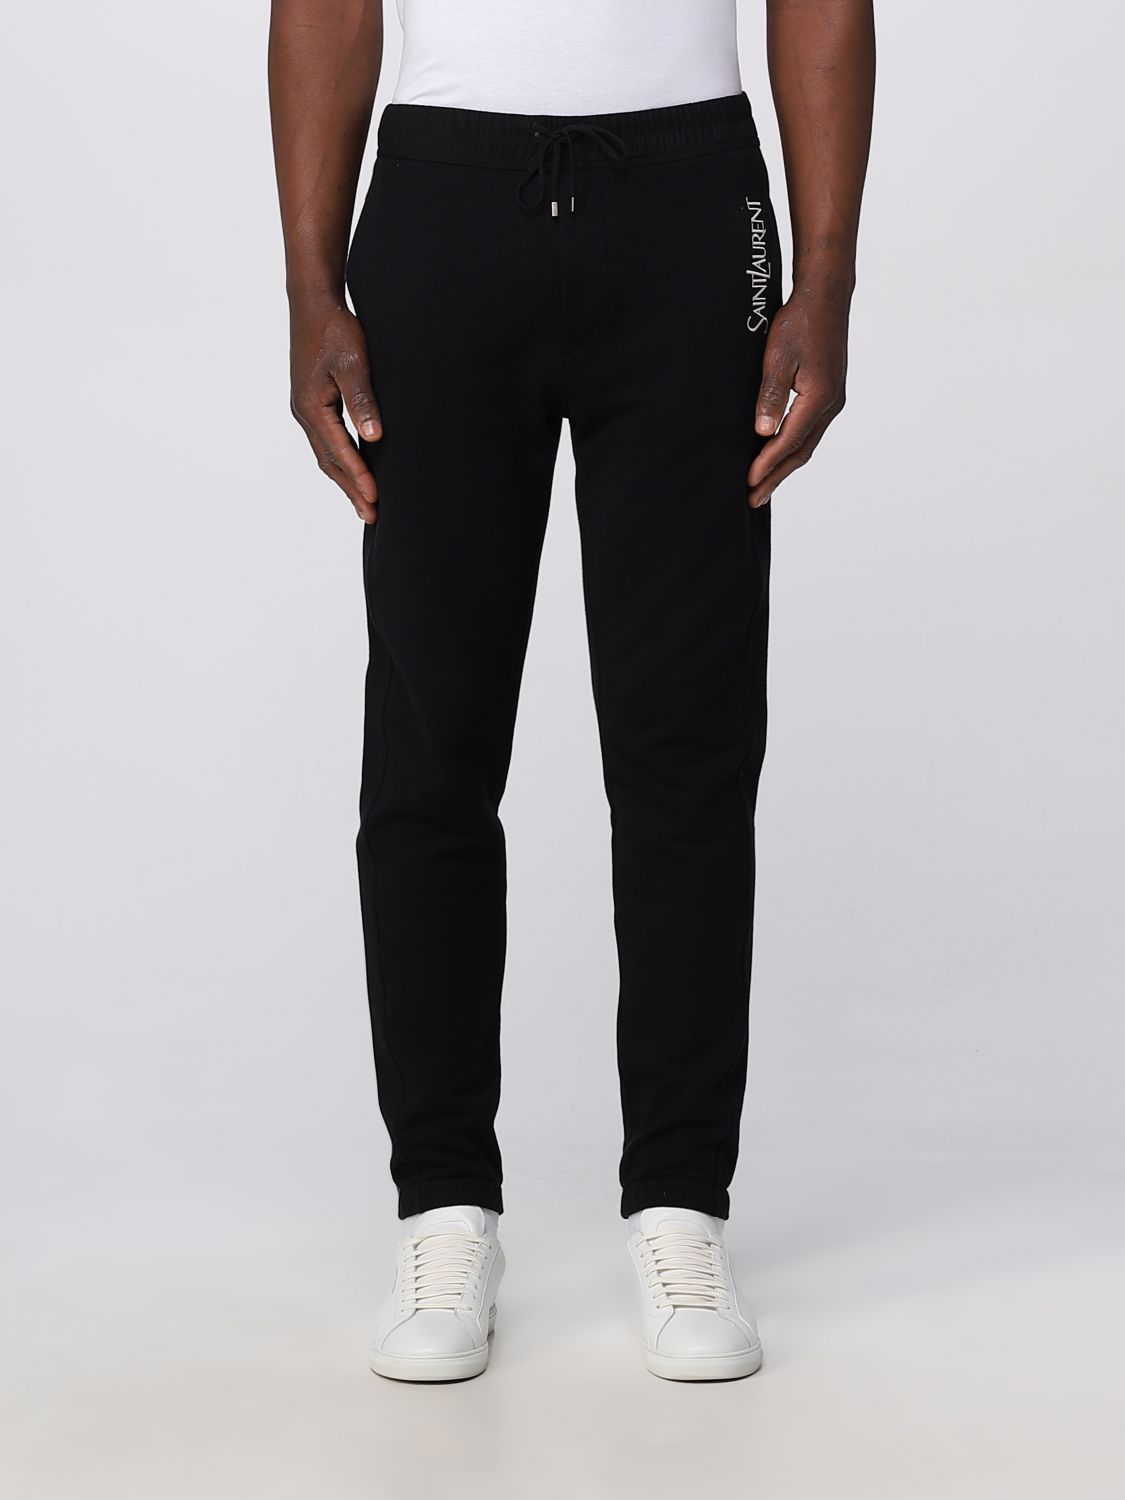 SAINT LAURENT: cotton pants - Black | Saint Laurent pants 736739Y36ZO ...